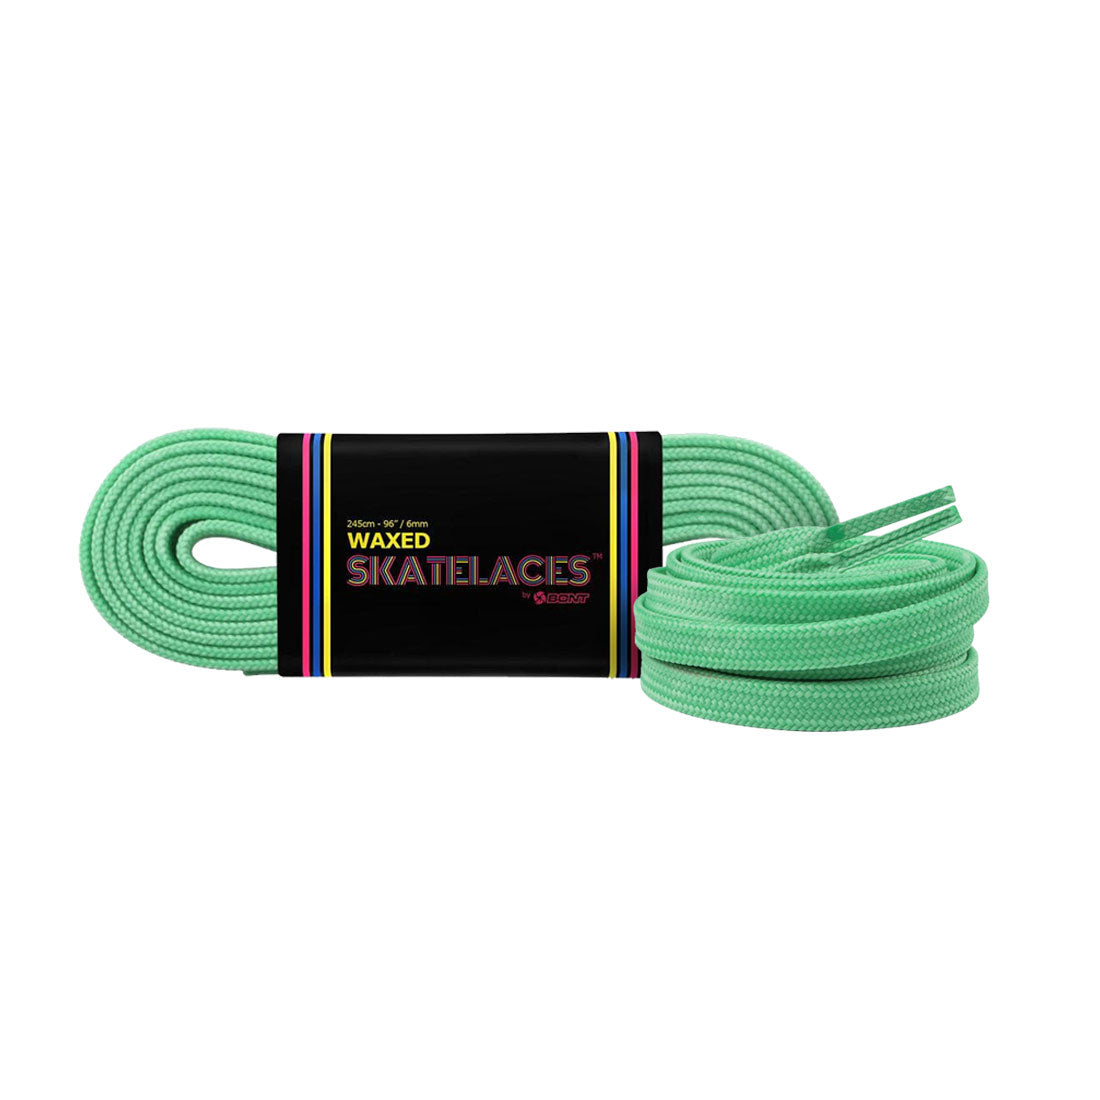 Bont Waxed 6mm Laces - 275cm/108in Pistachio Green Laces